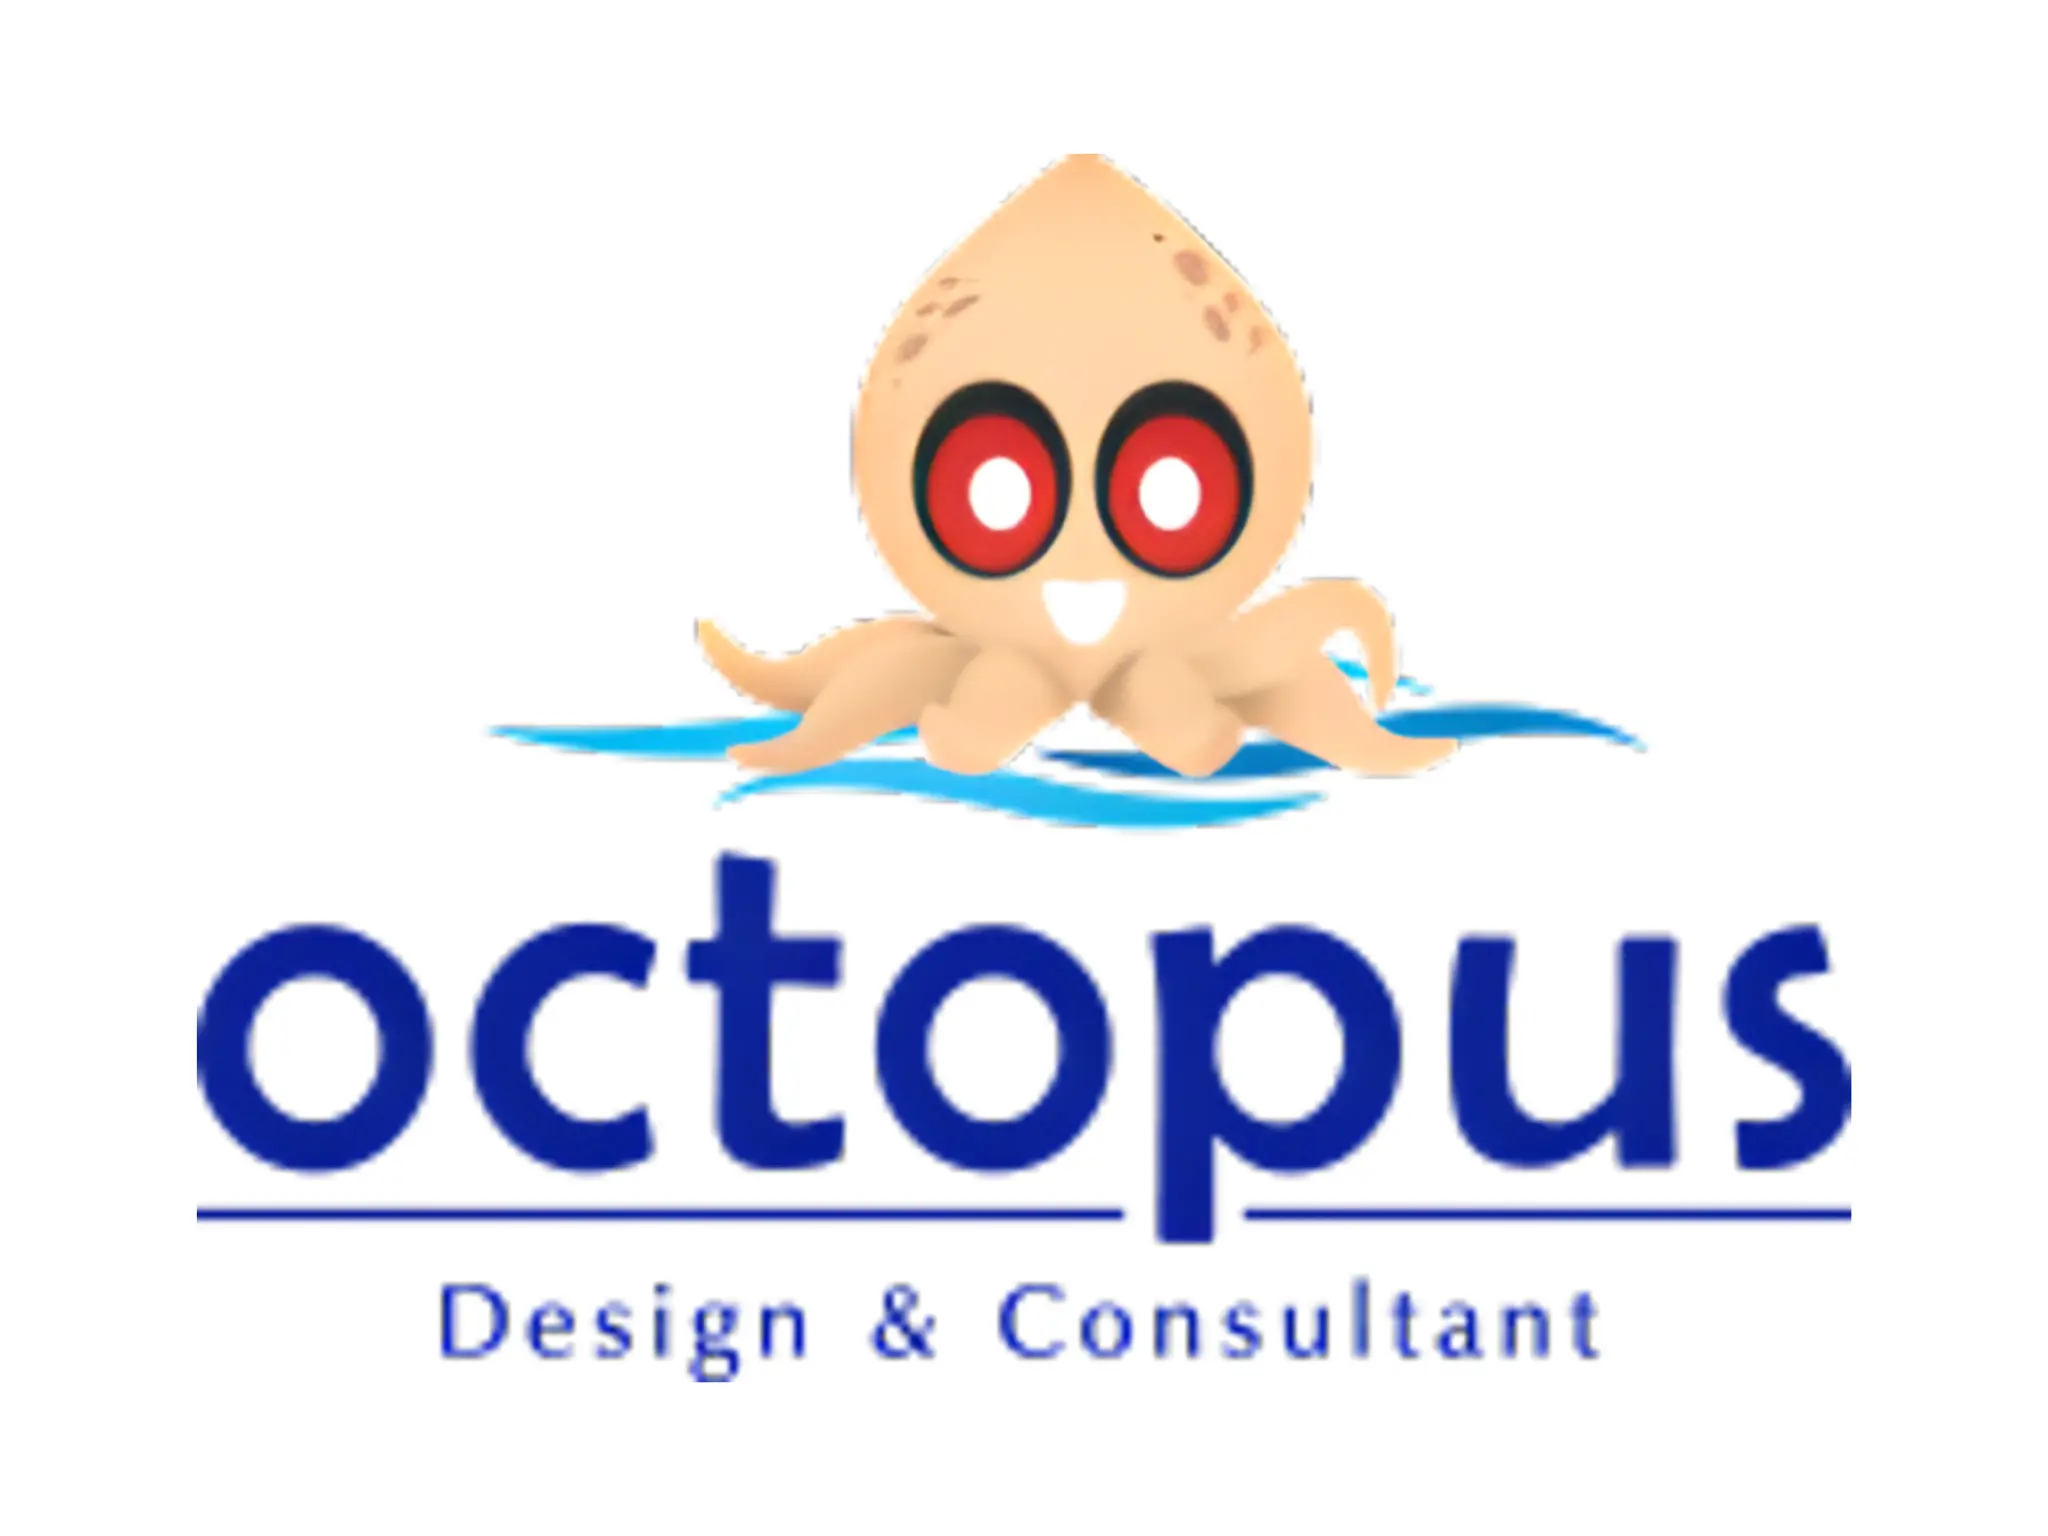 OCTOPUS DESIGN & CONSULTANT